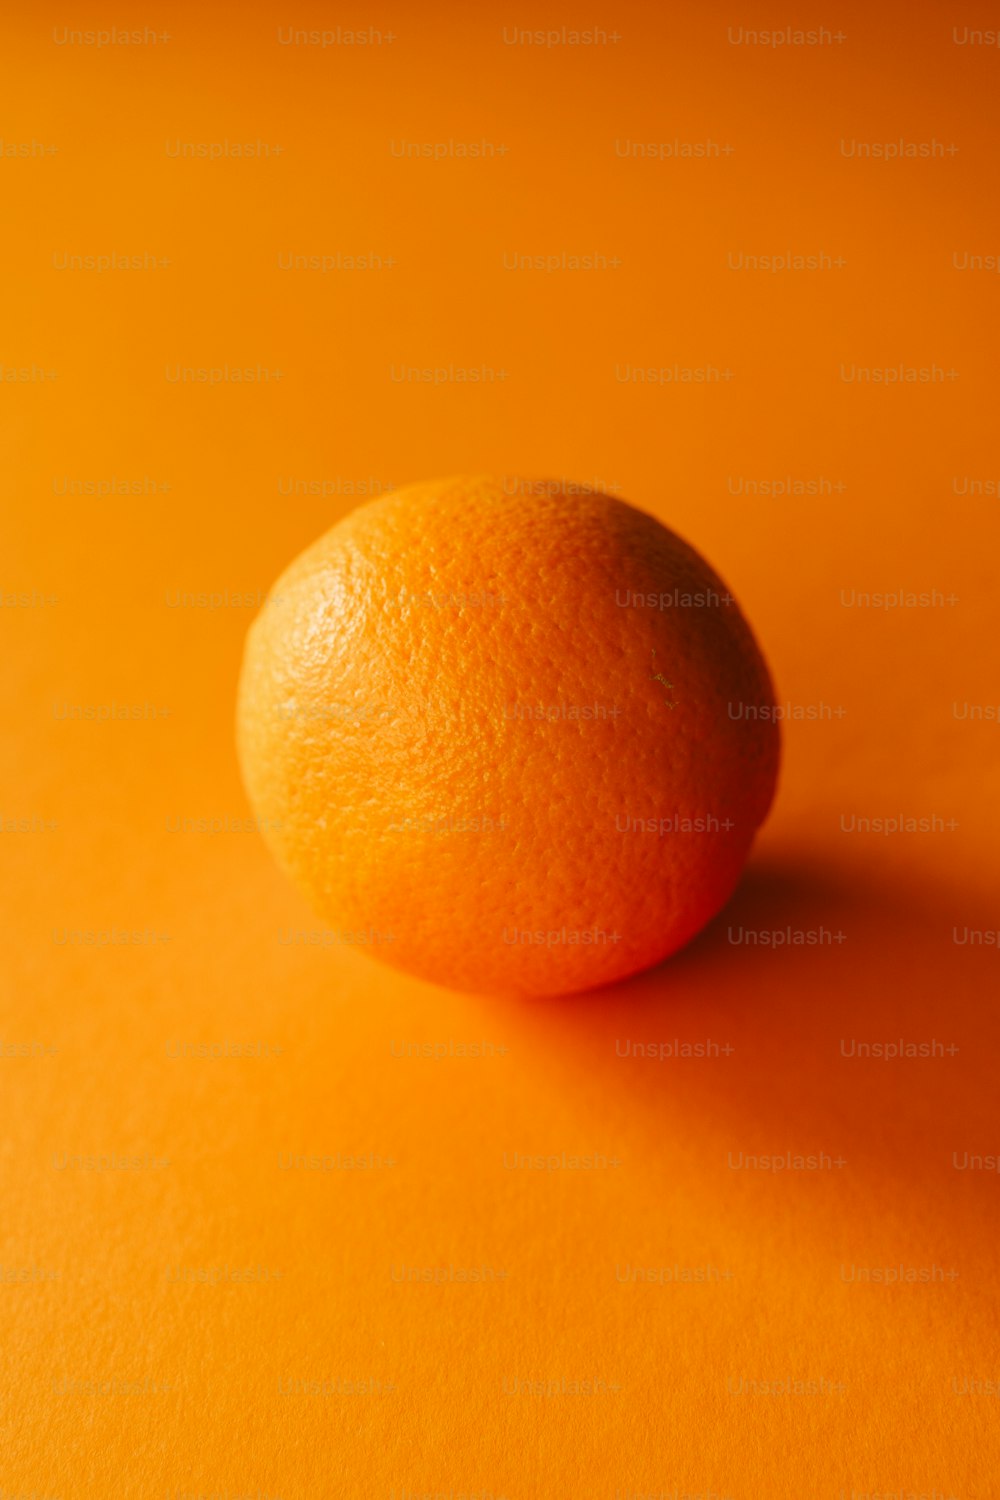 Un primer plano de una naranja